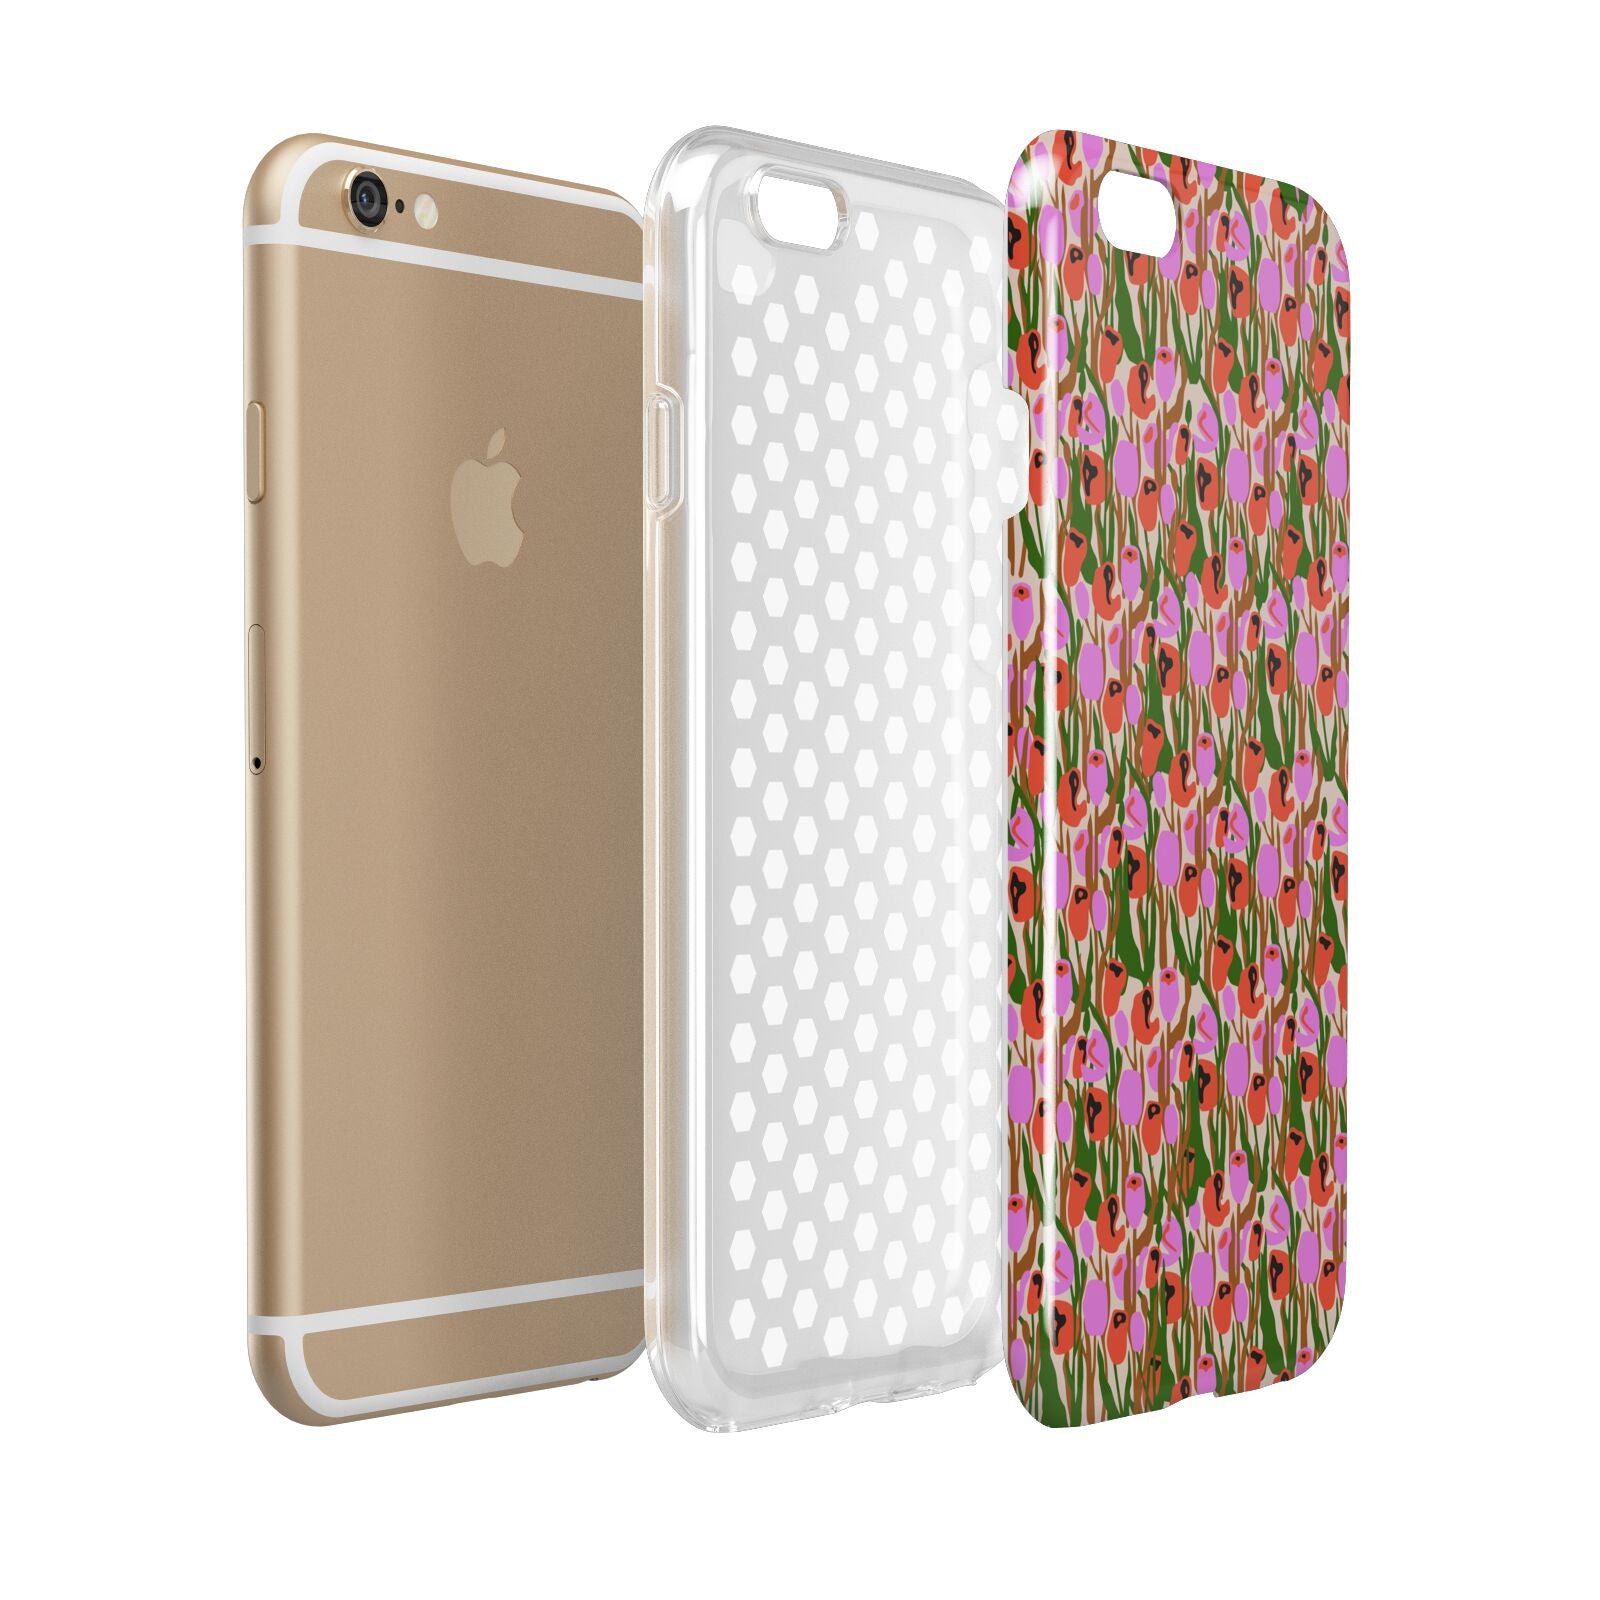 Floral Apple iPhone 6 3D Tough Case Expanded view